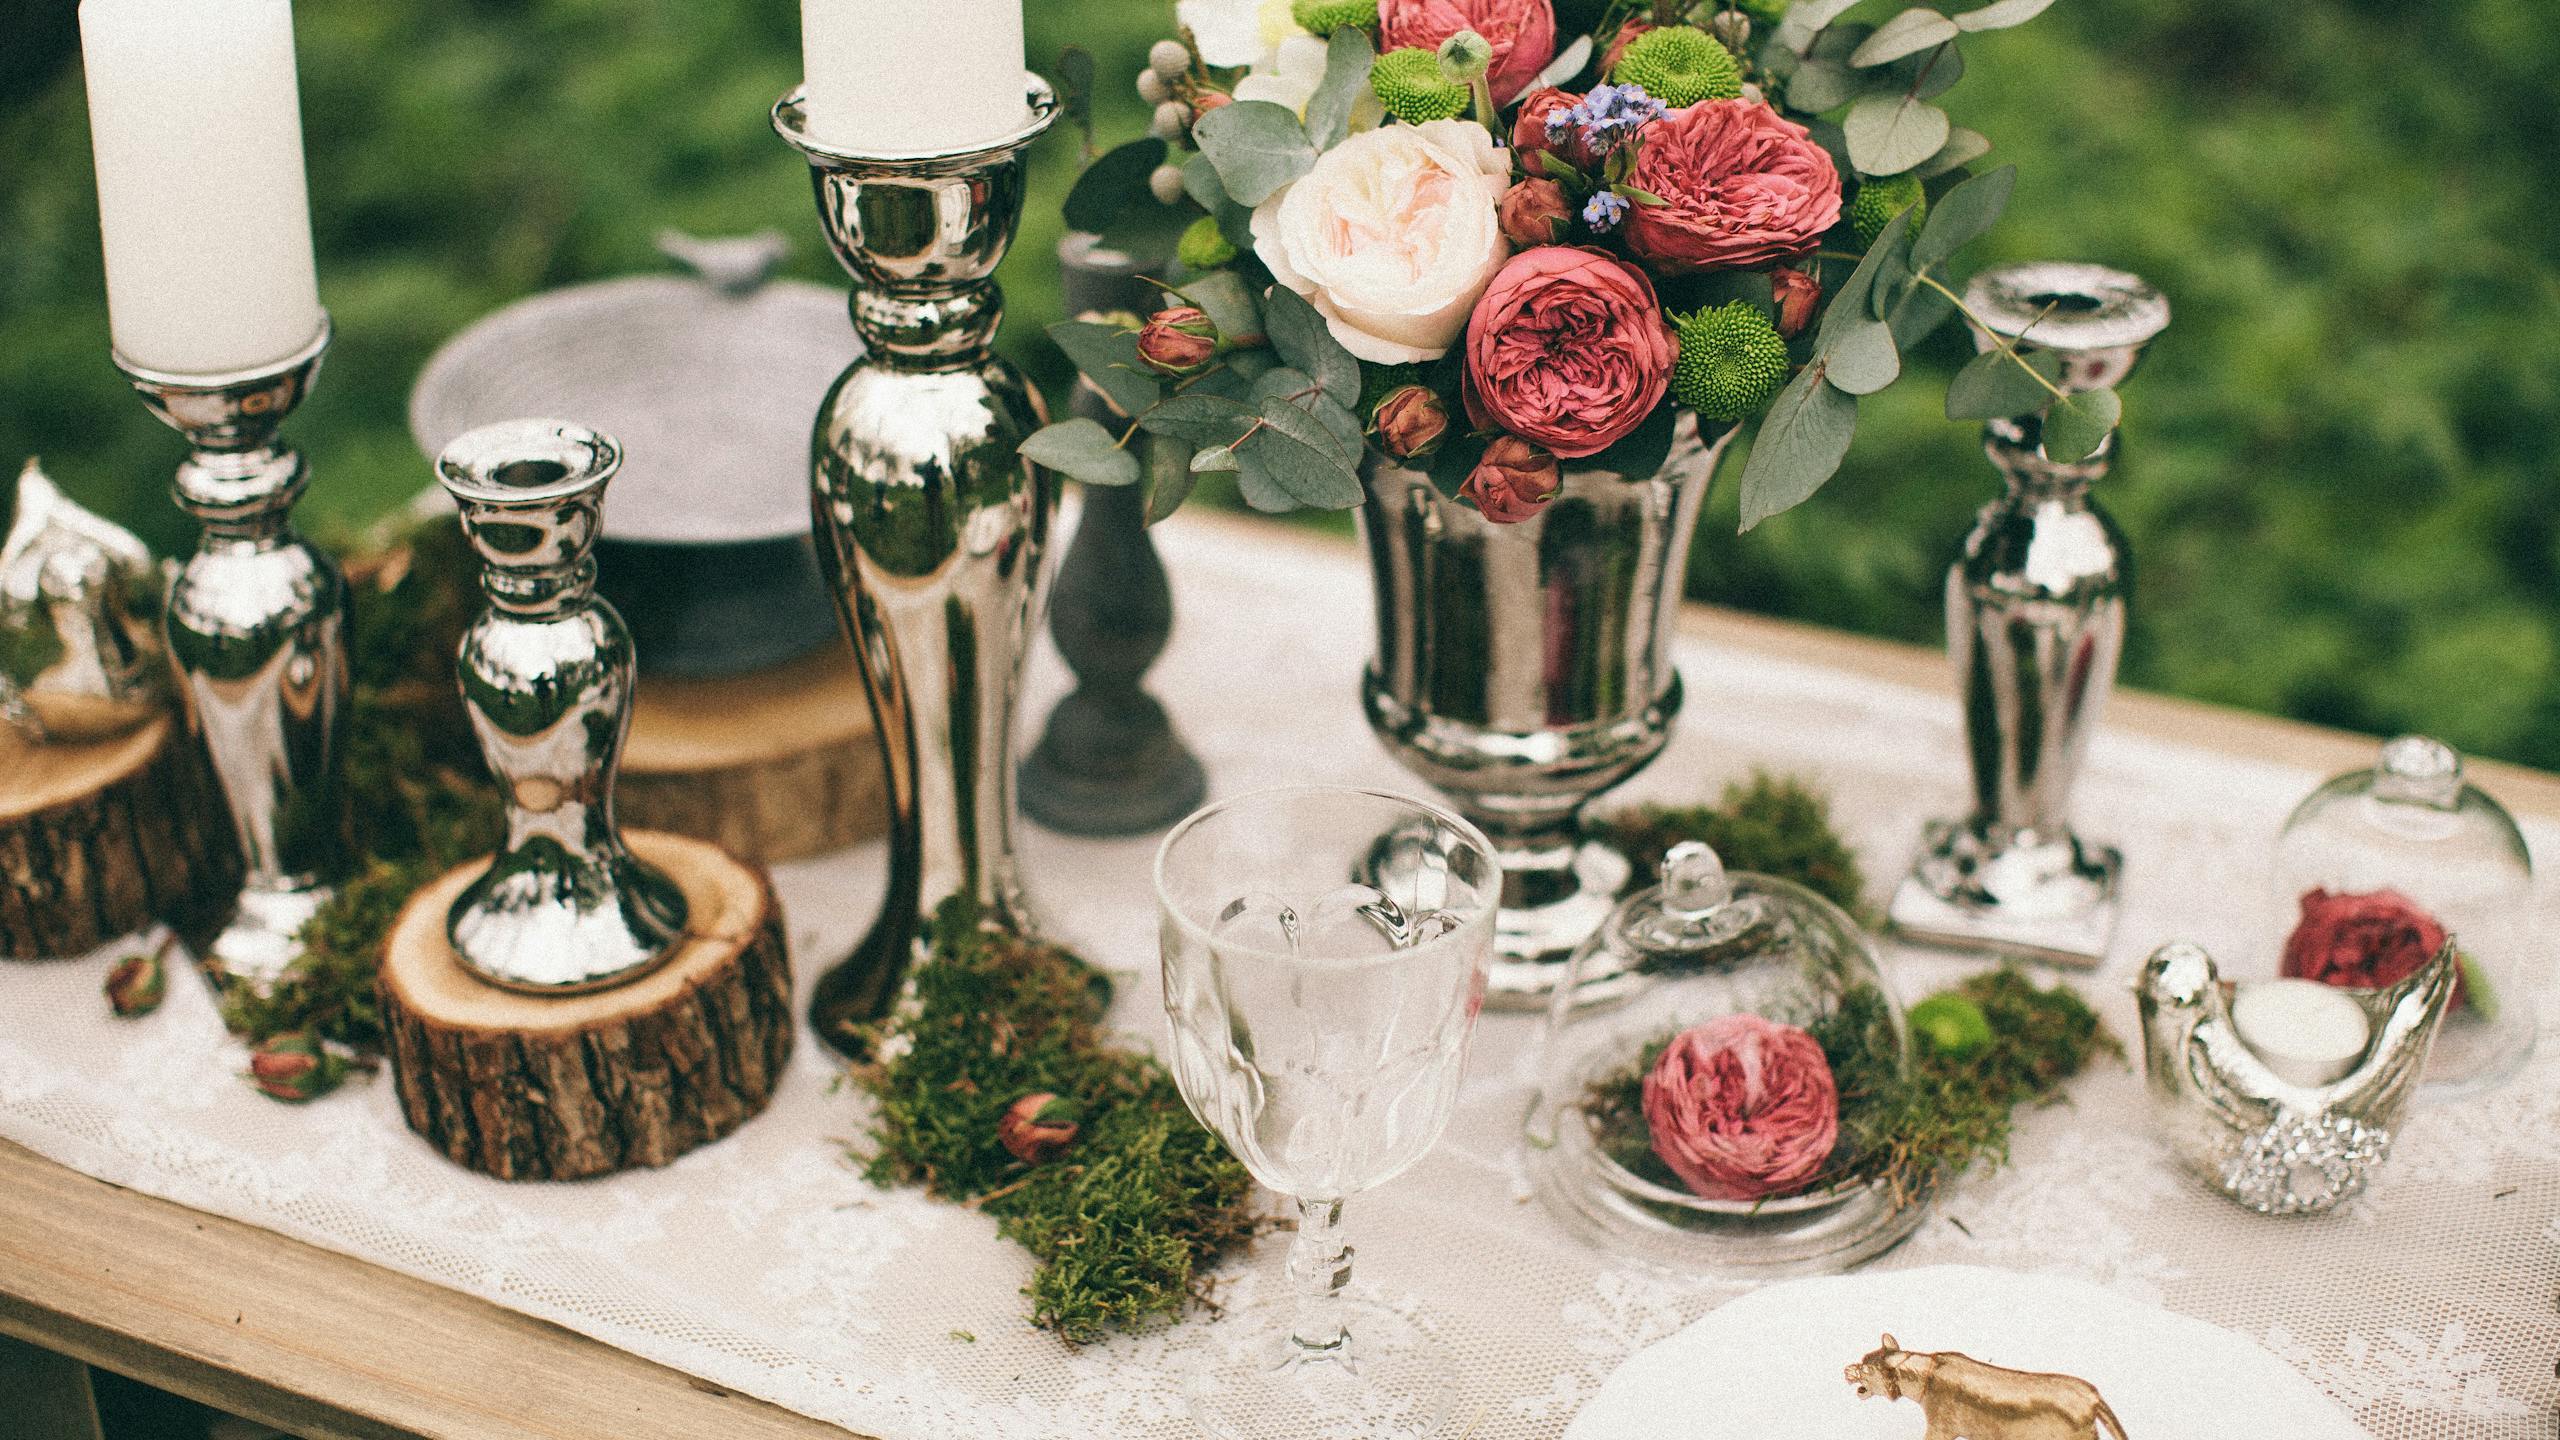 Table de banquet dans la nature avec une décoration bucolique